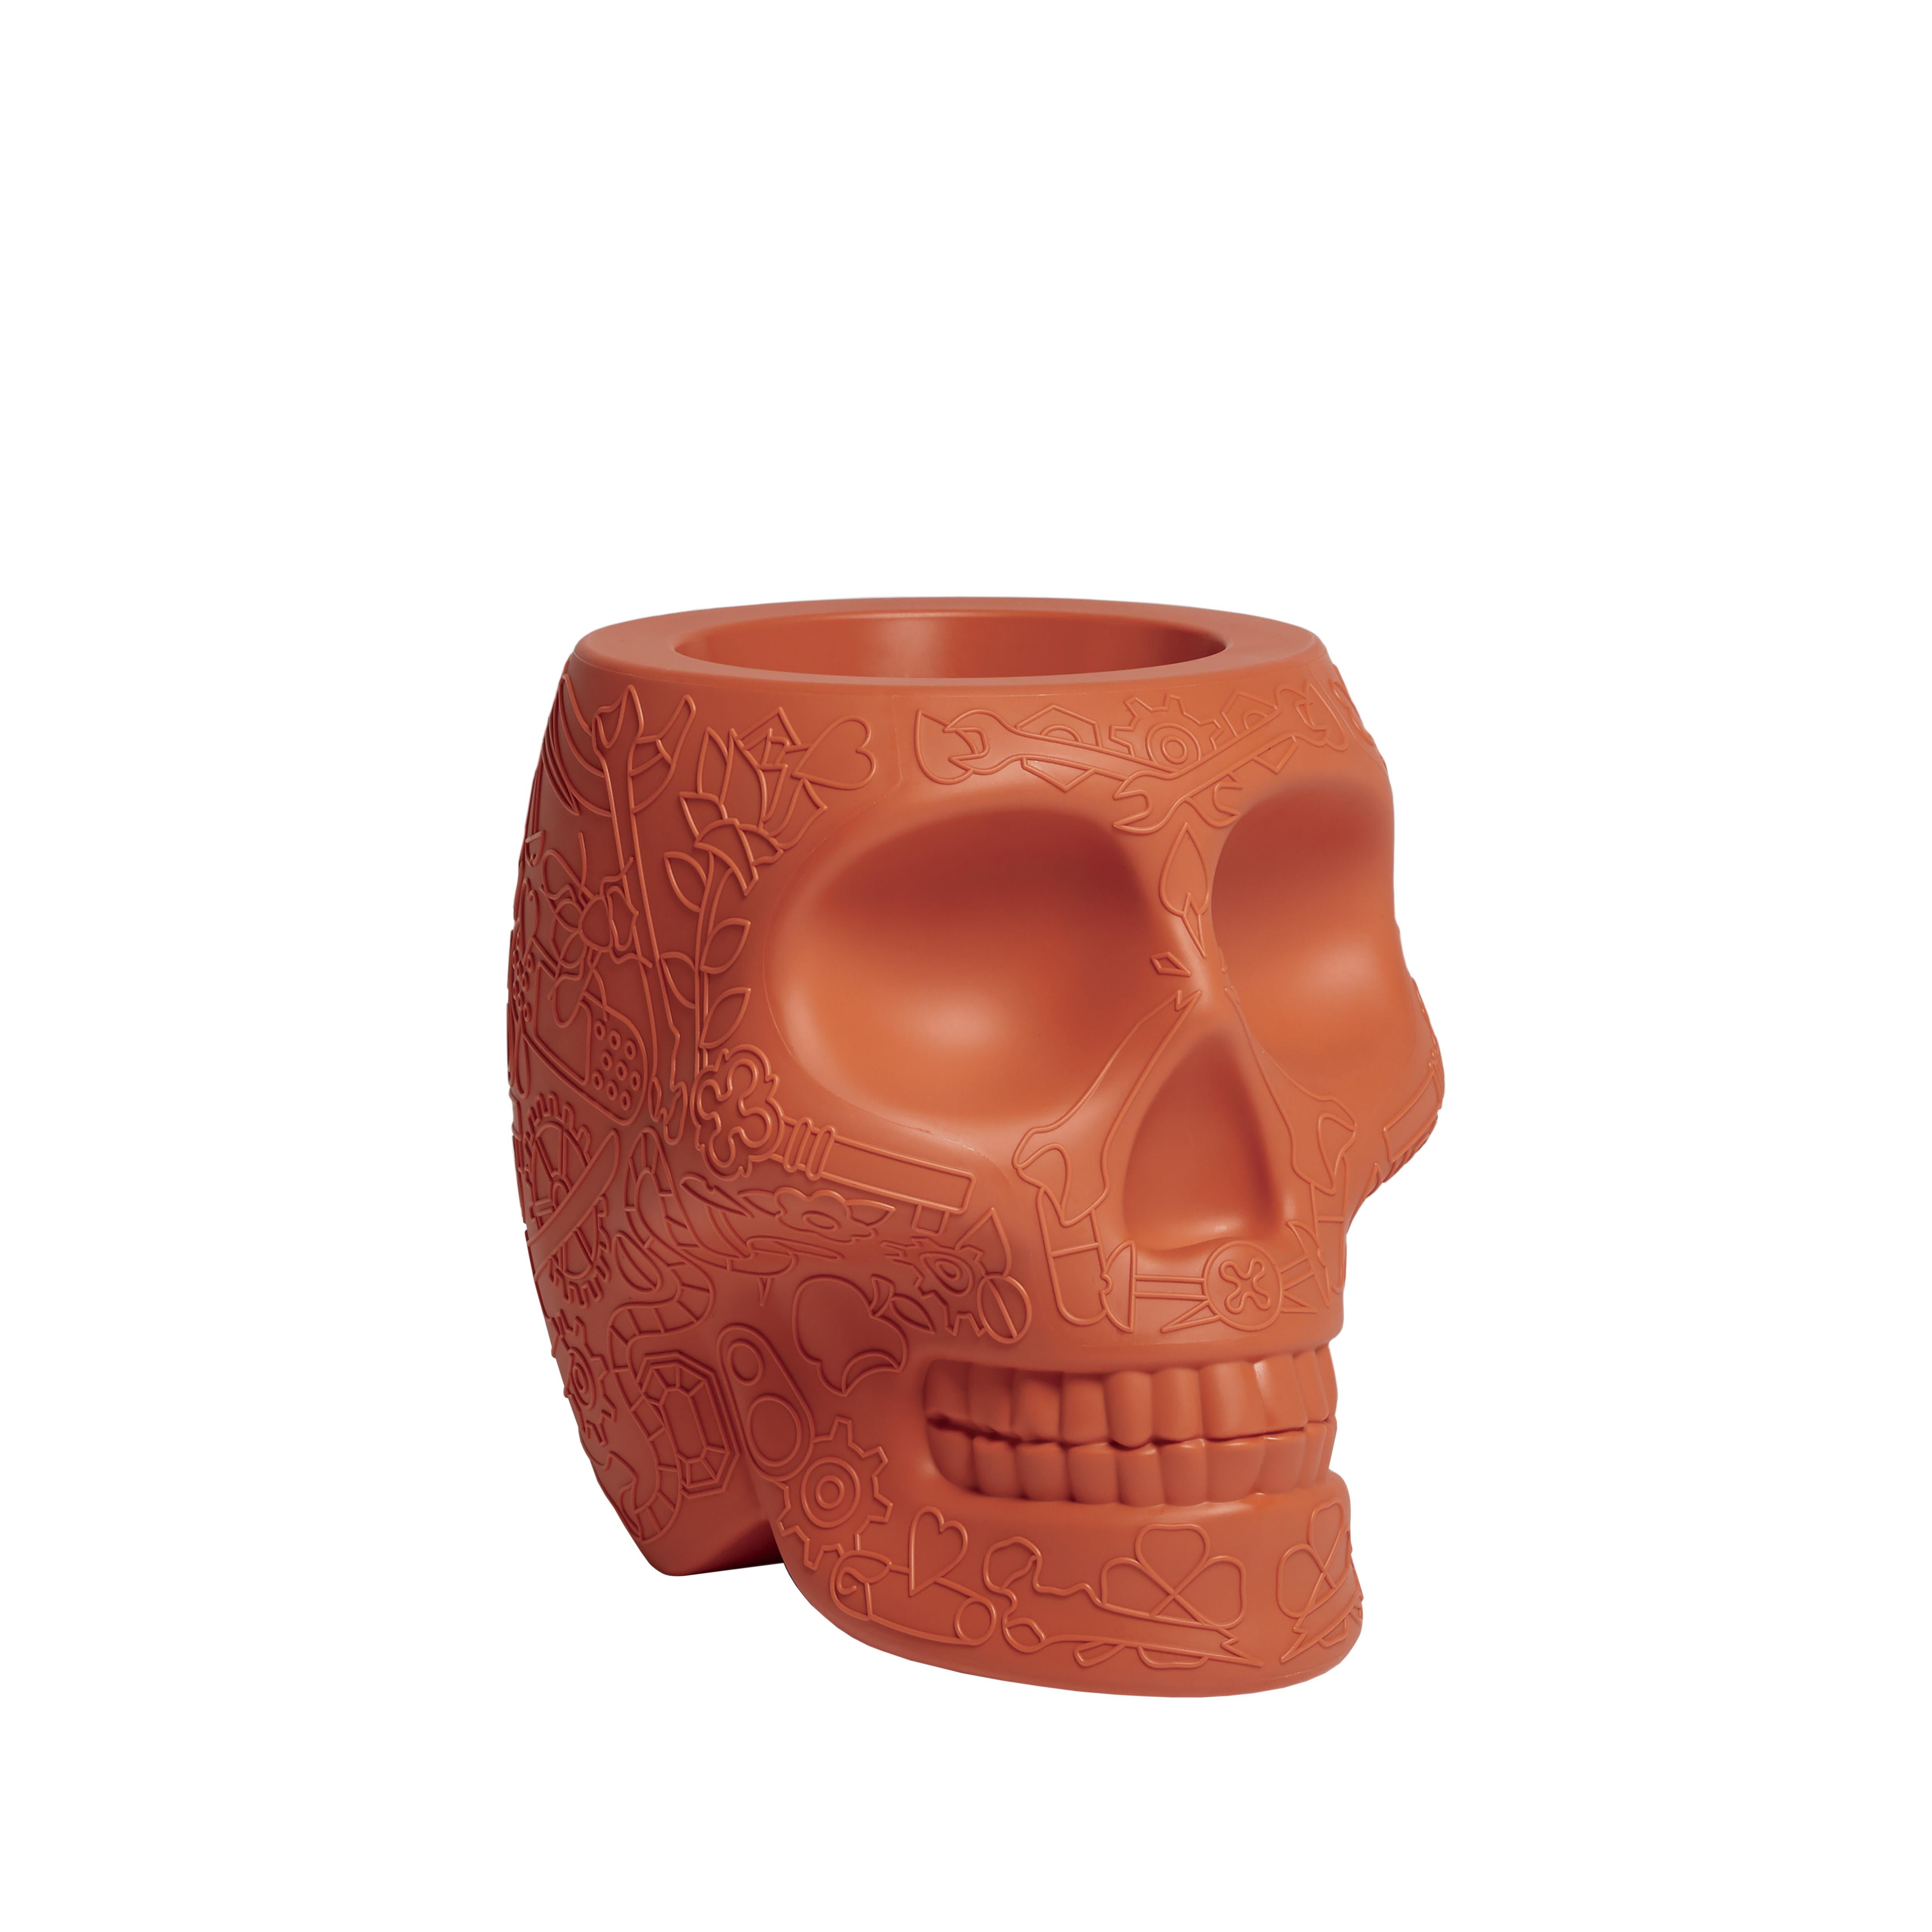 En vente : Orange (Terracotta) Jardinière ou seau à champagne moderne en plastique en forme de crâne en terre cuite par Studio Job 2